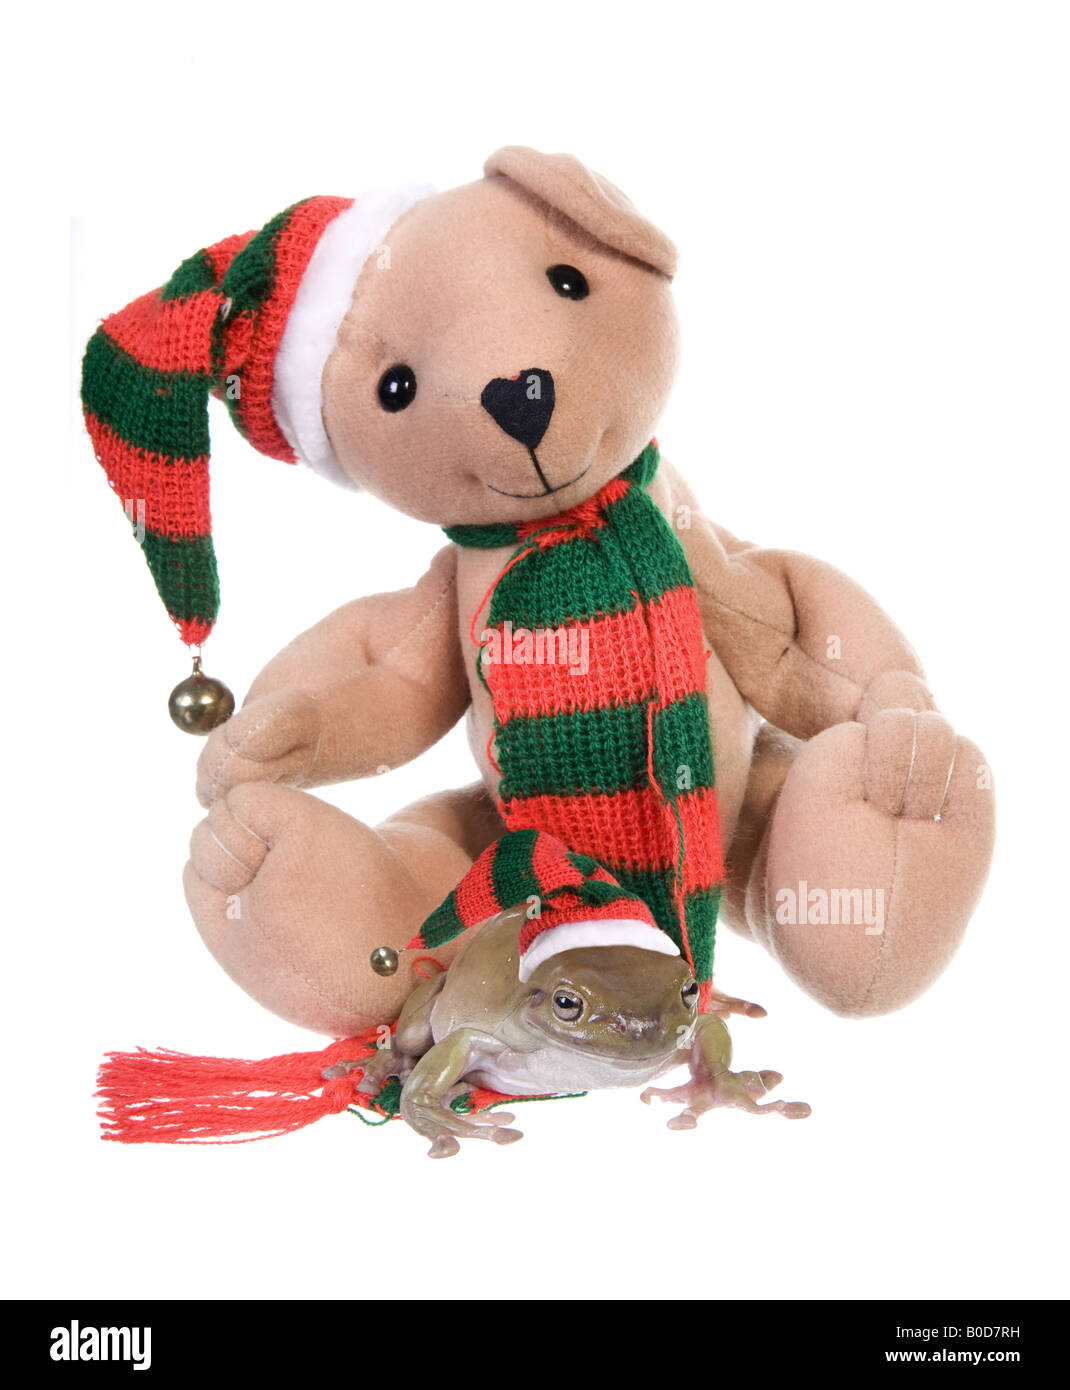 Dumpy Weihnachtsbaum Frosch mit Teddy Teddybär Strumpf Hut isoliert auf  weißem Hintergrund Stockfotografie - Alamy